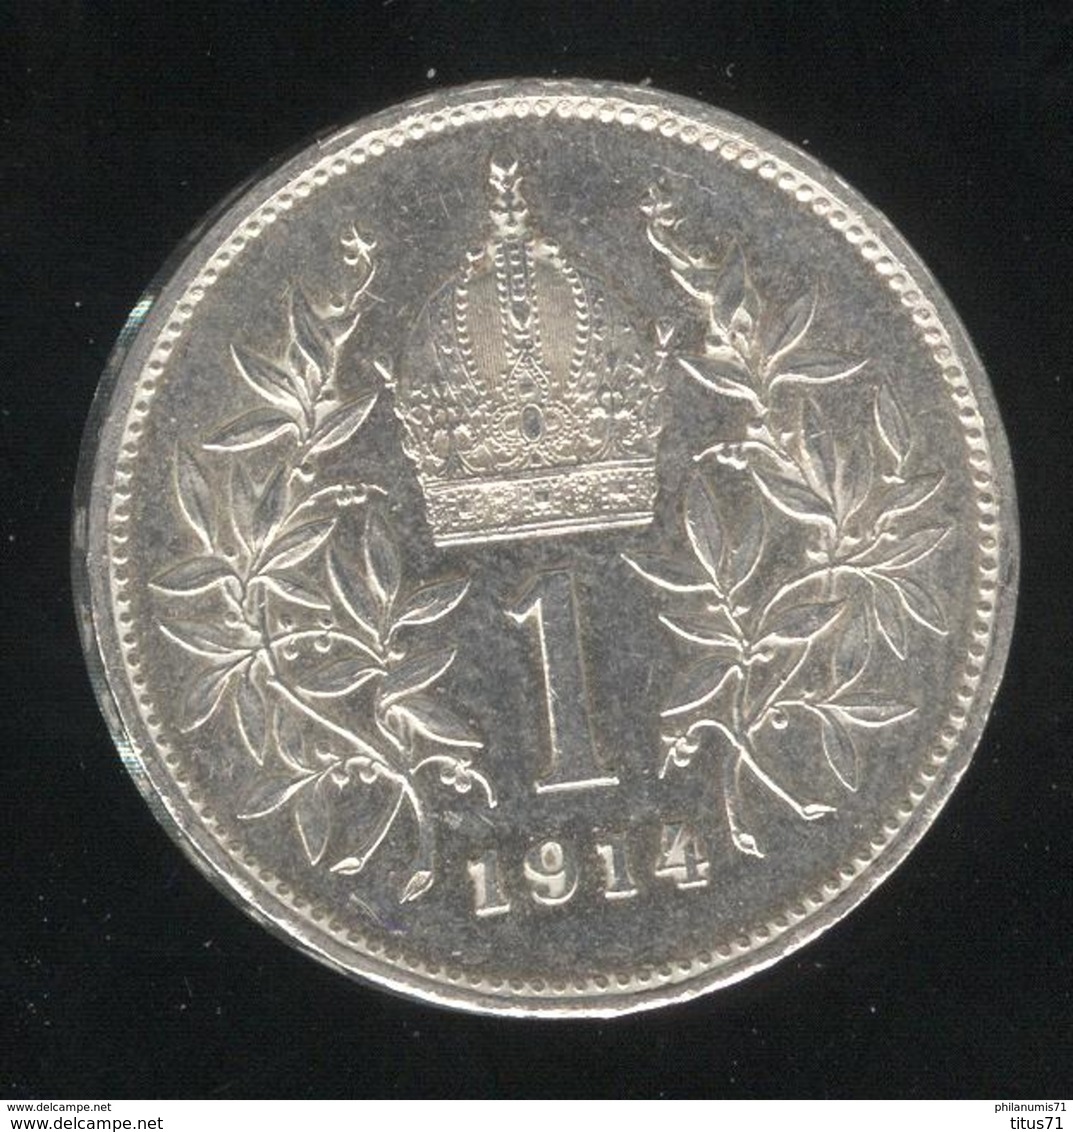 1 Couronne Autriche / Austria 1914 - Argent / Silver - SUP - Autriche